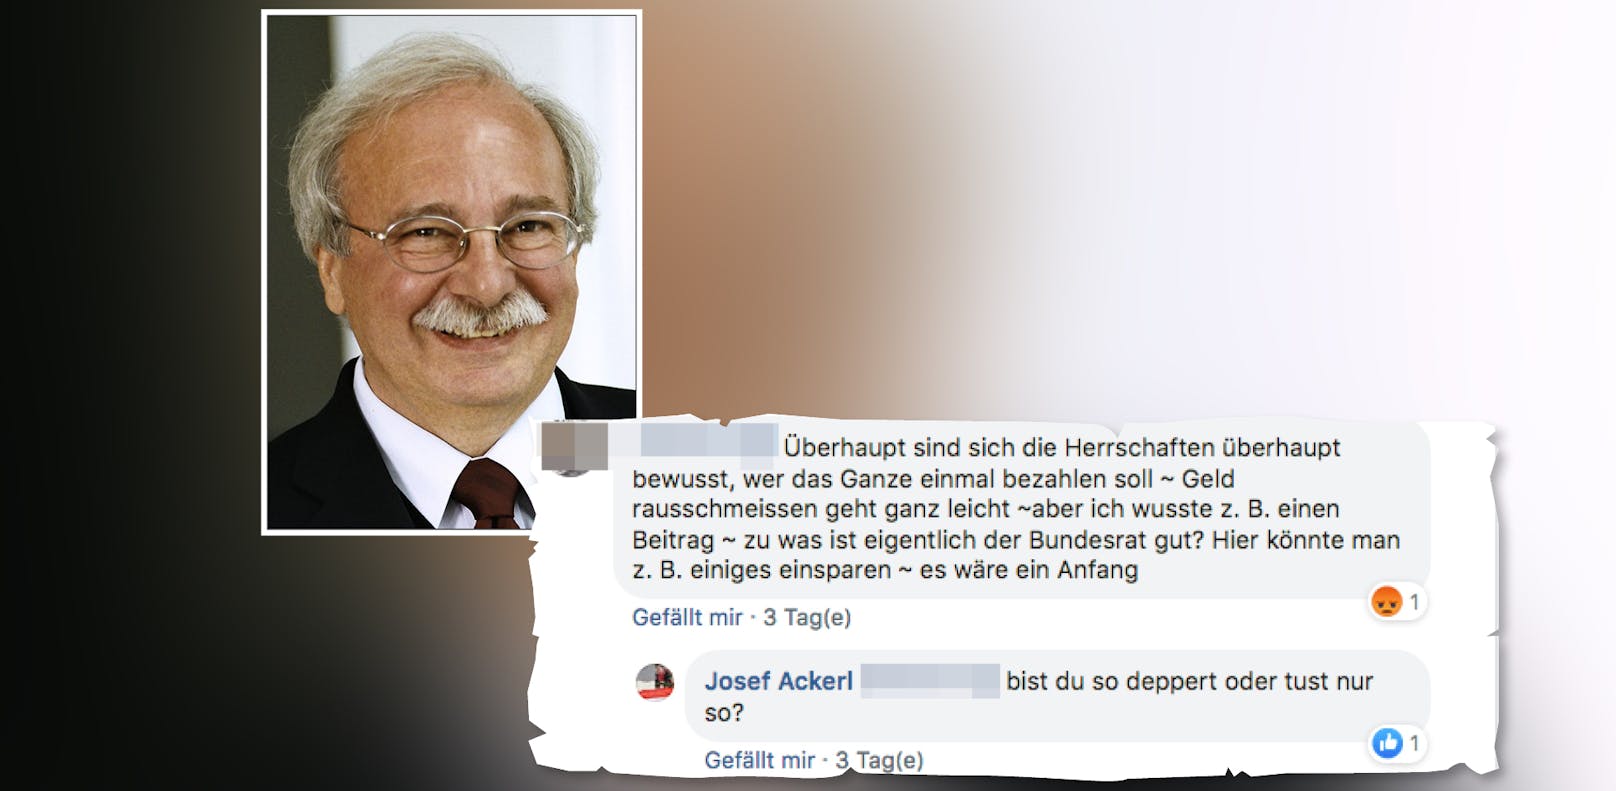 Auf Facebook beleidigte der ehemalige SPOÖ-Chef Josef Ackerl einen User.